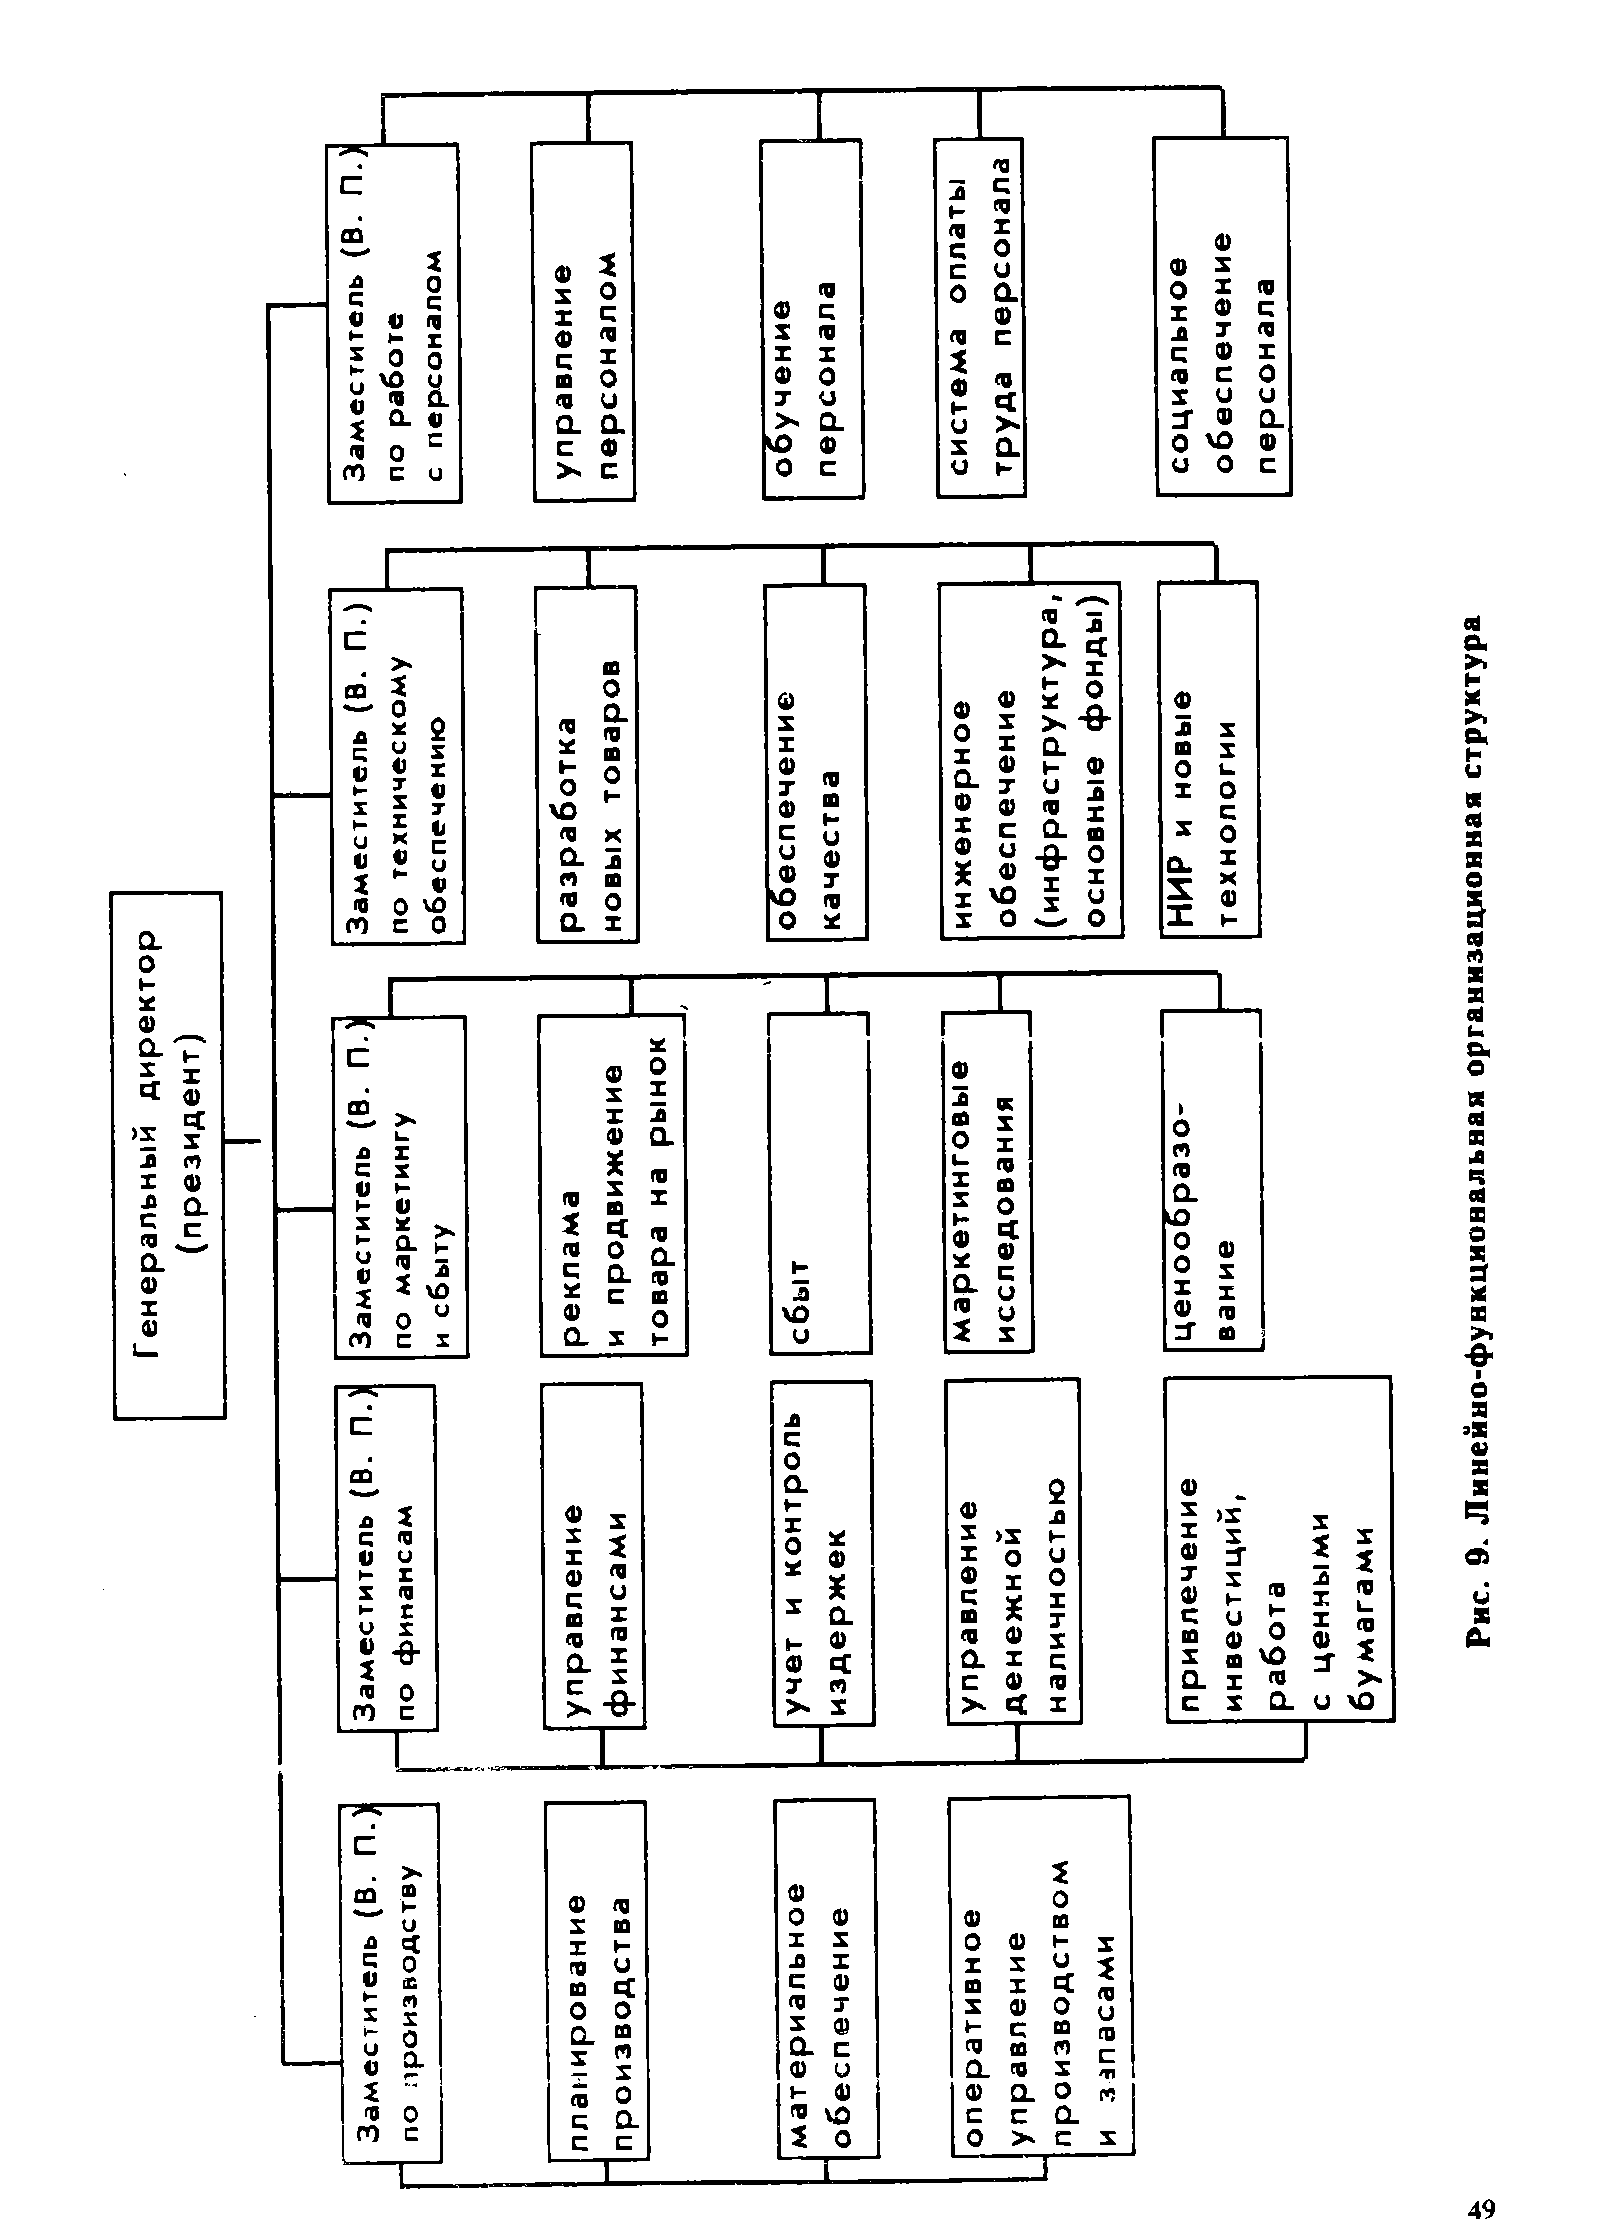 Рис. 9. Линейно-функциональная организационная структура
